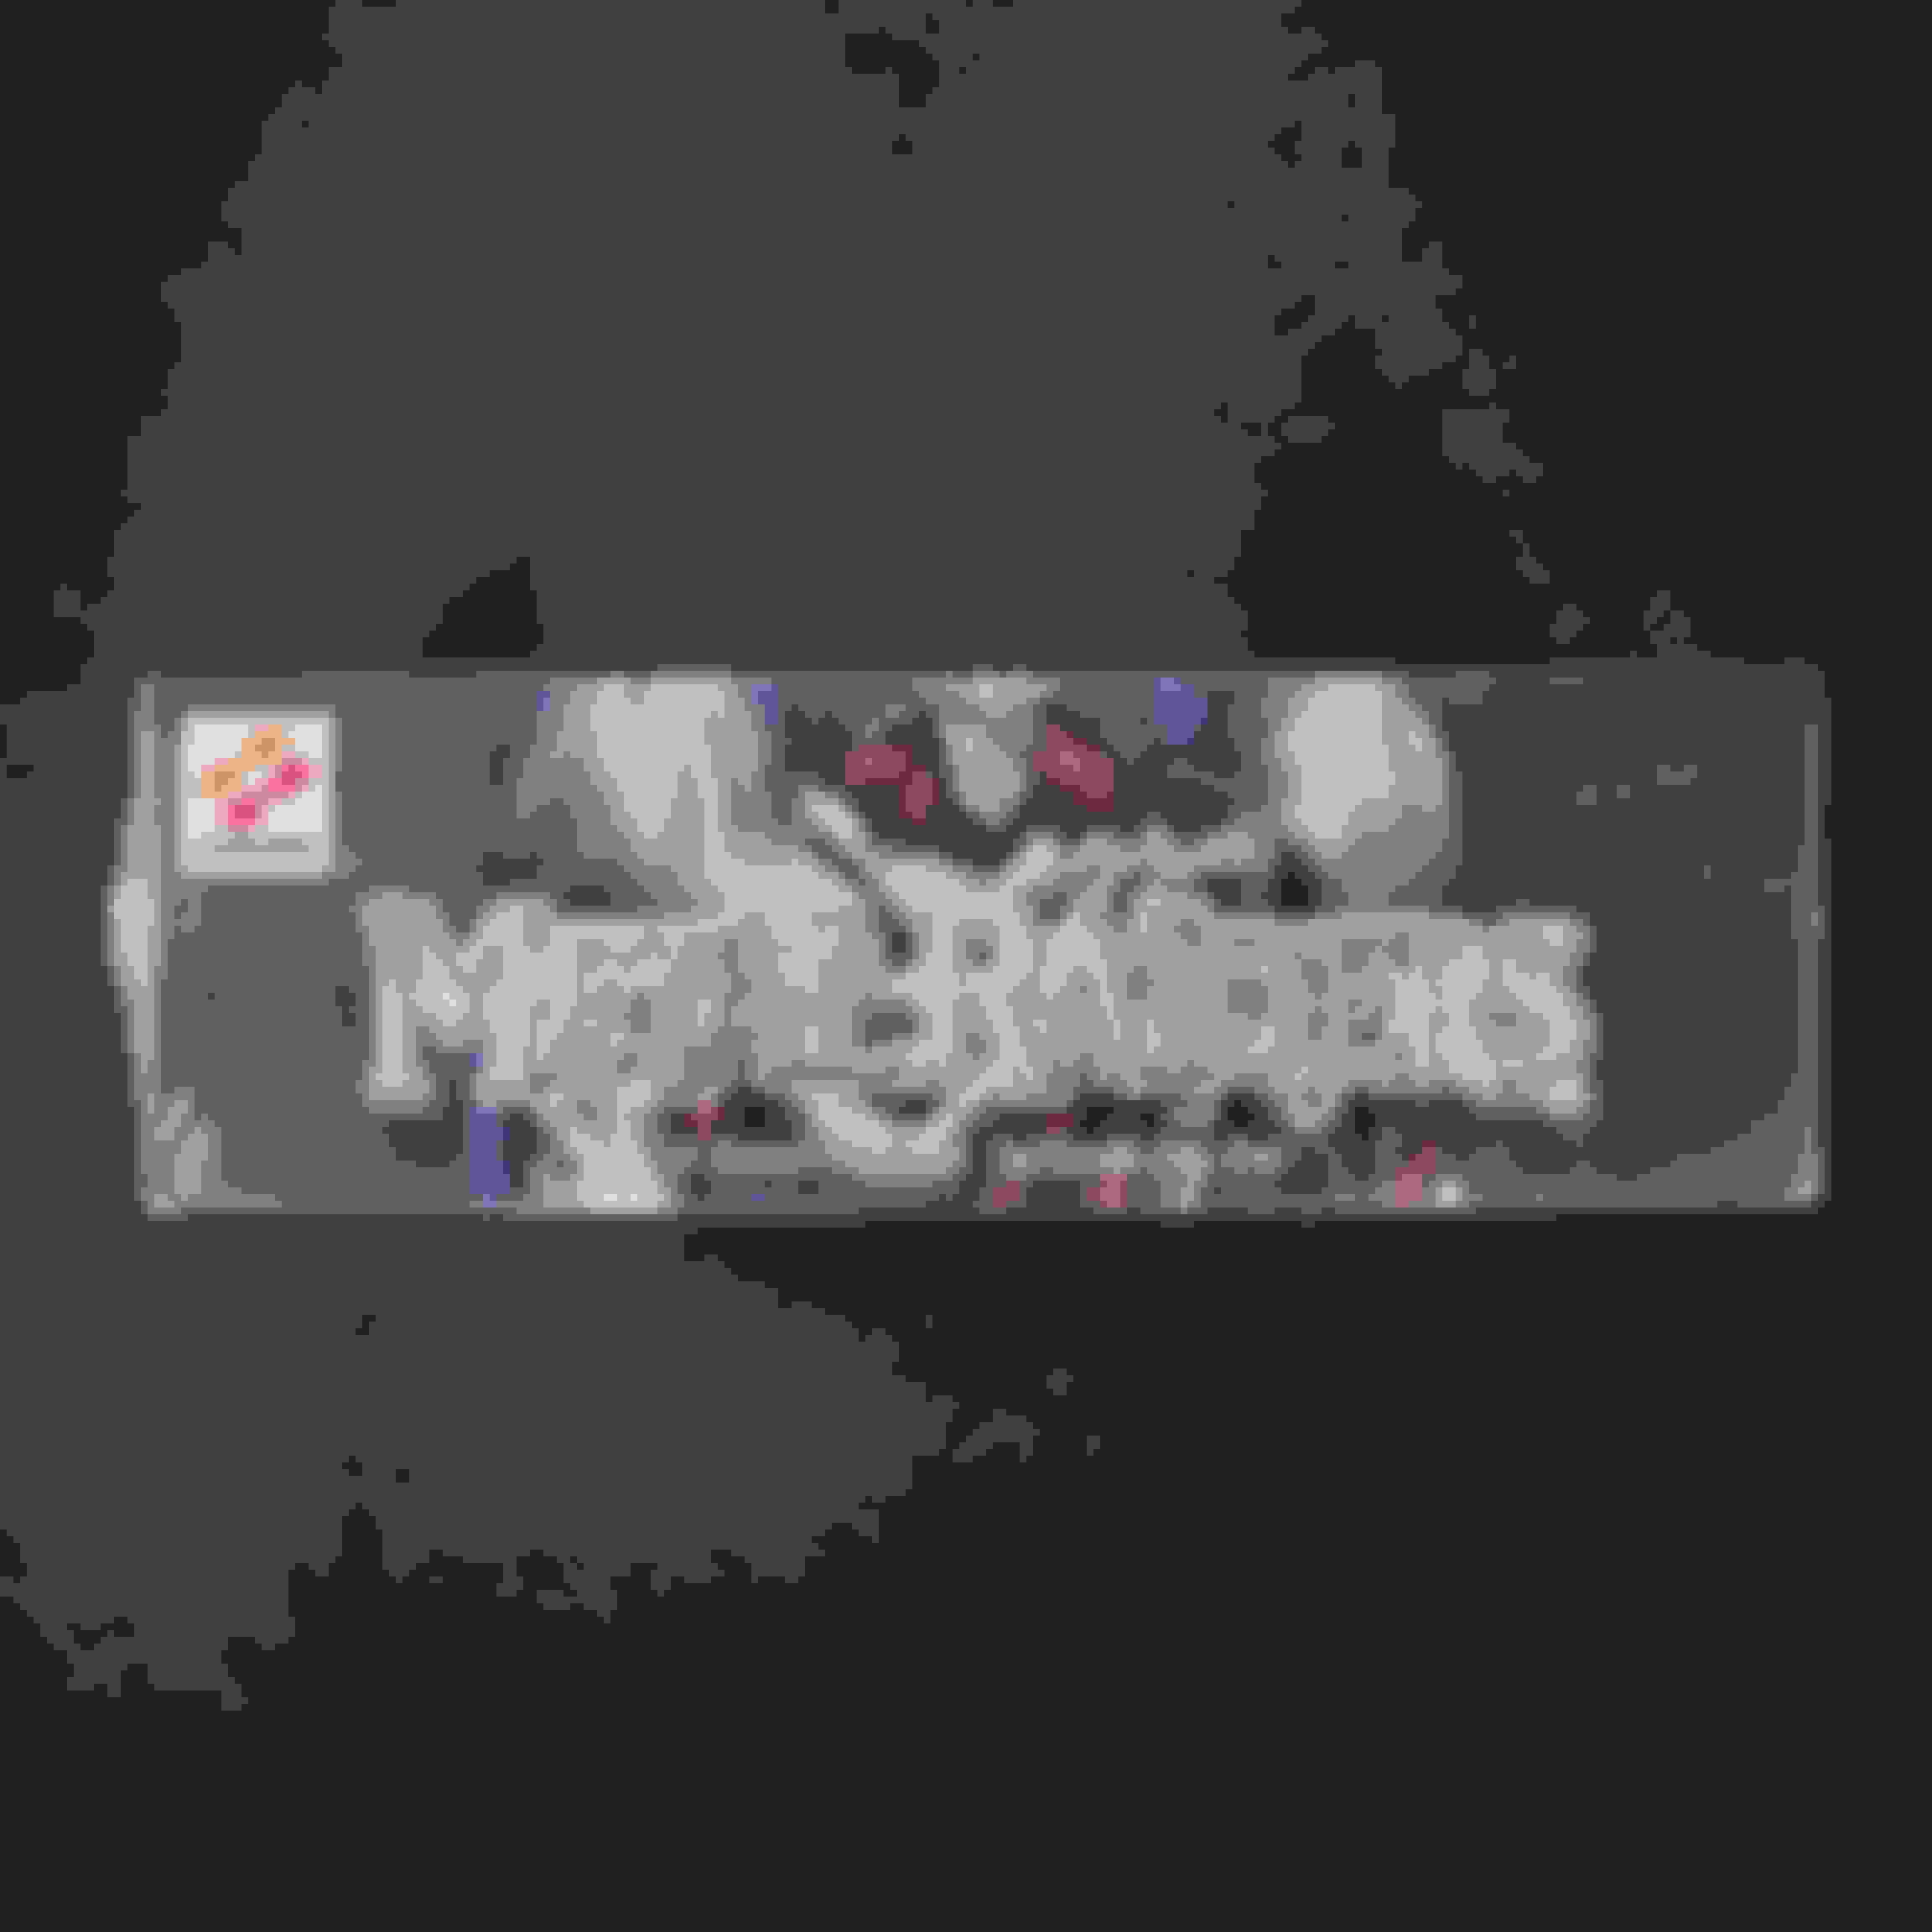 鋼鉄の襲撃者 Metal Raiders アジア版英語販売中 遊戯王カード通販のclove